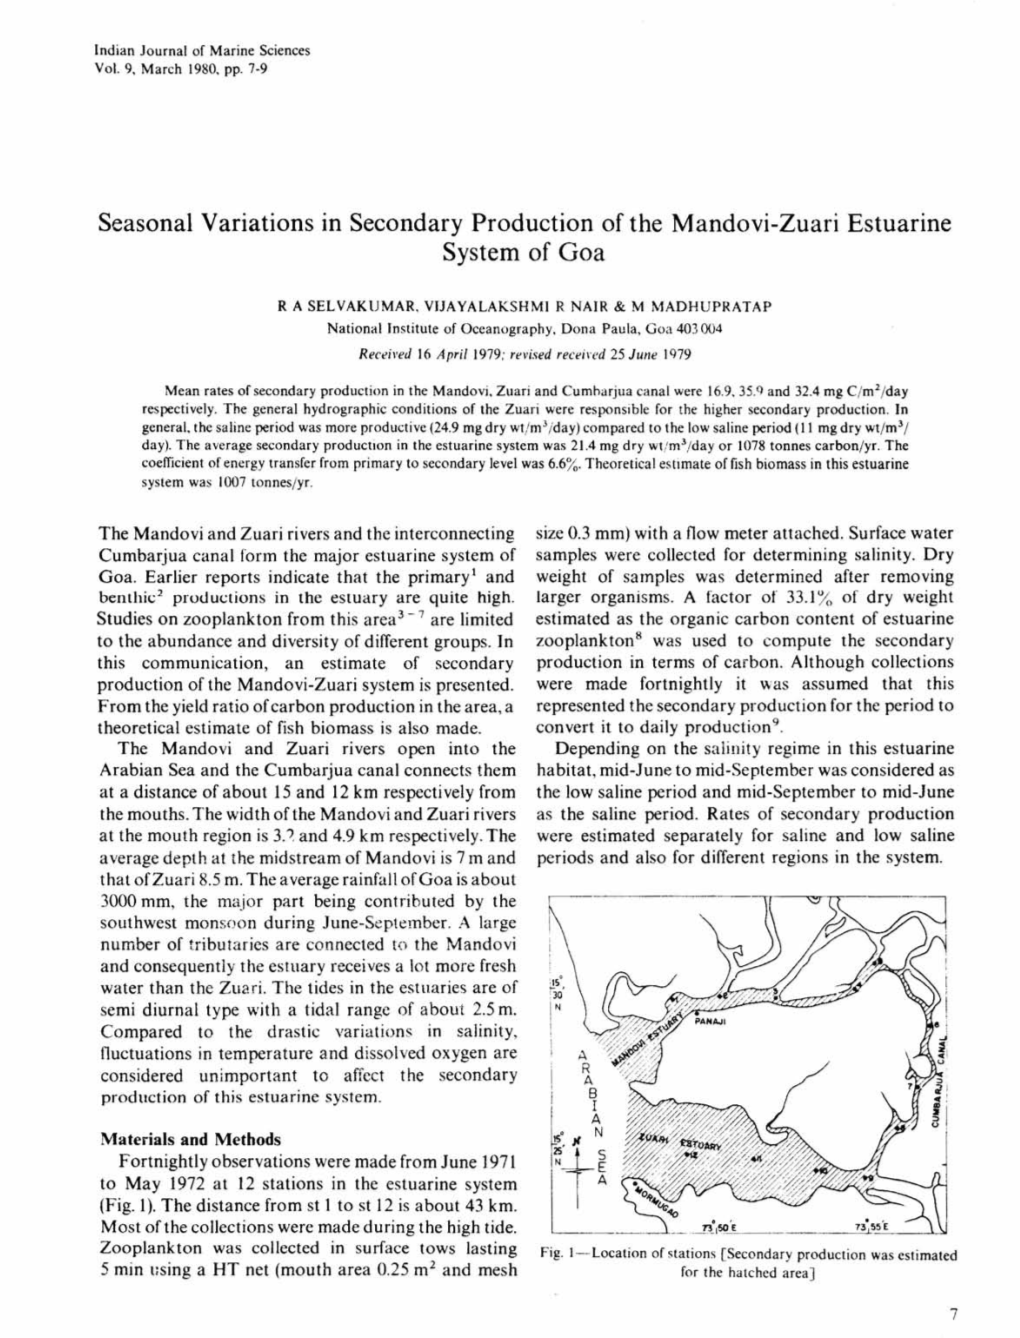 Seasonal Variations in Secondary Production Ofthe Mandovi-Zuari